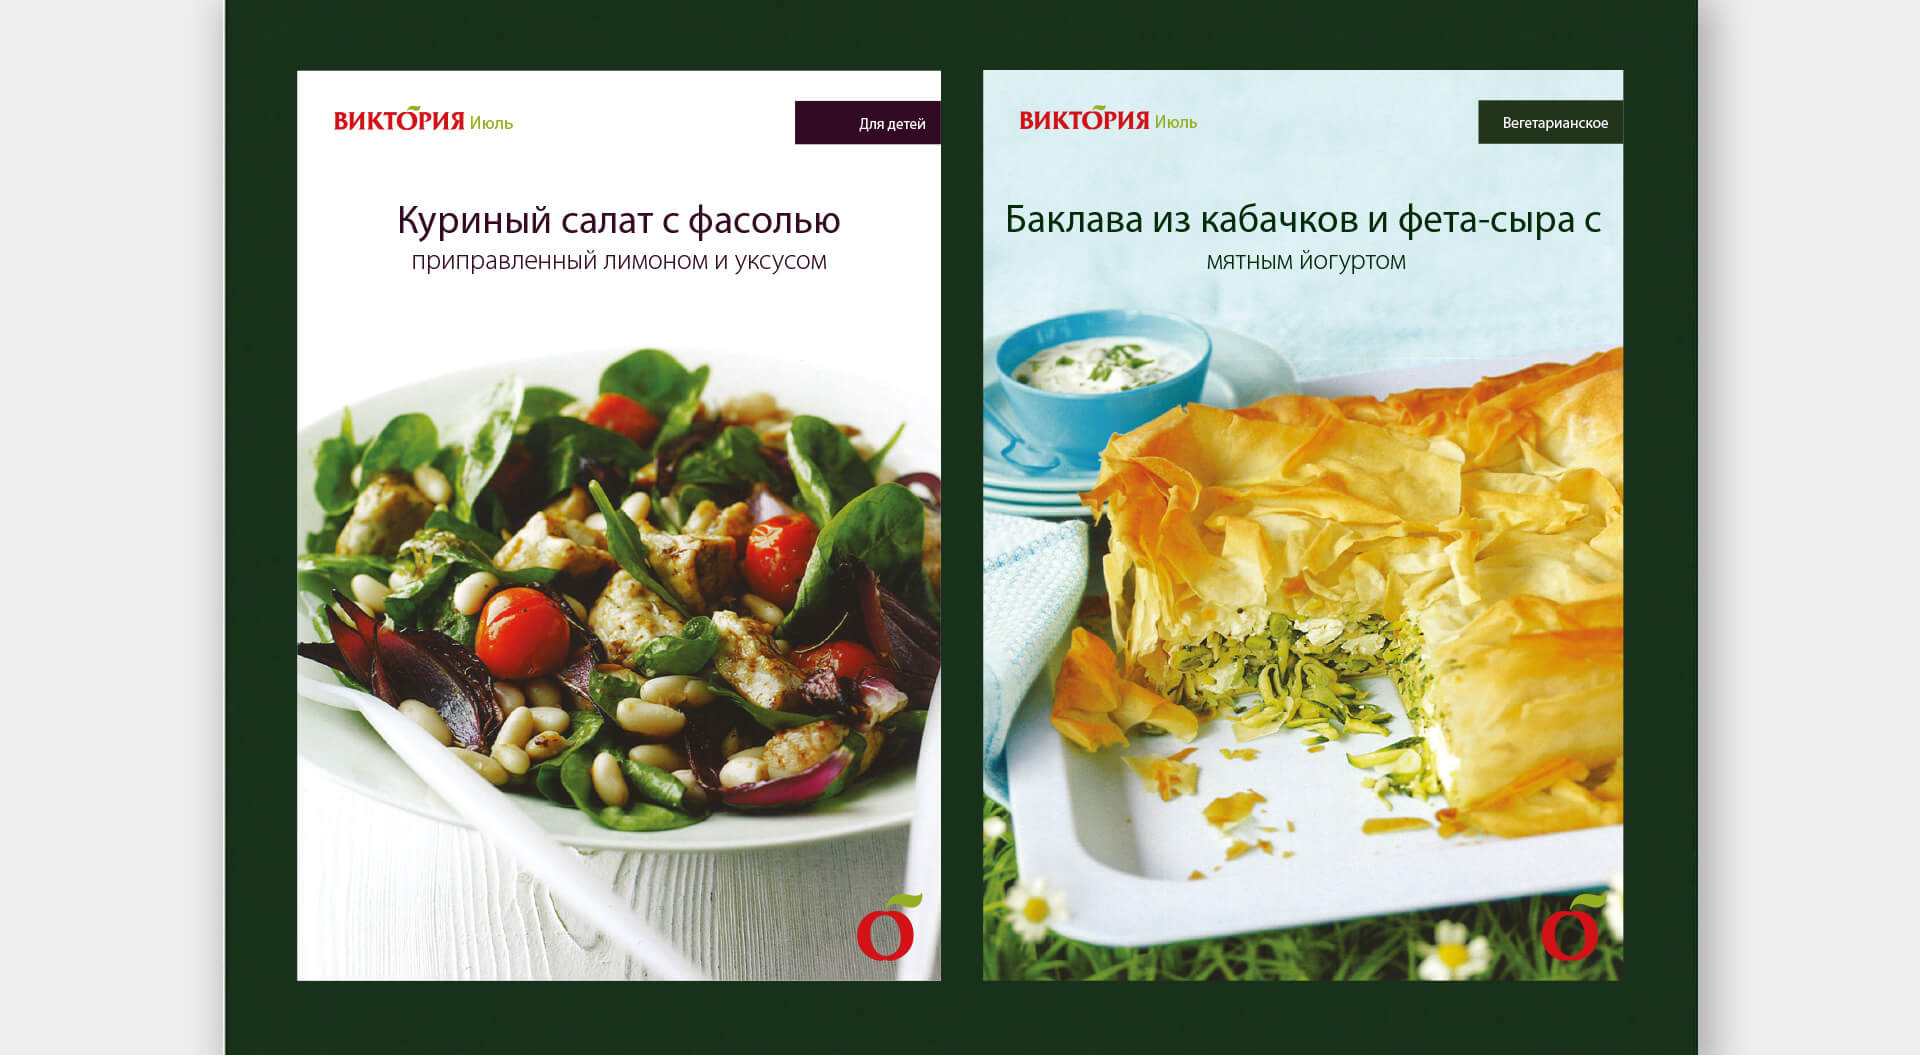 Victoria supermarkets Russia store catalogue design